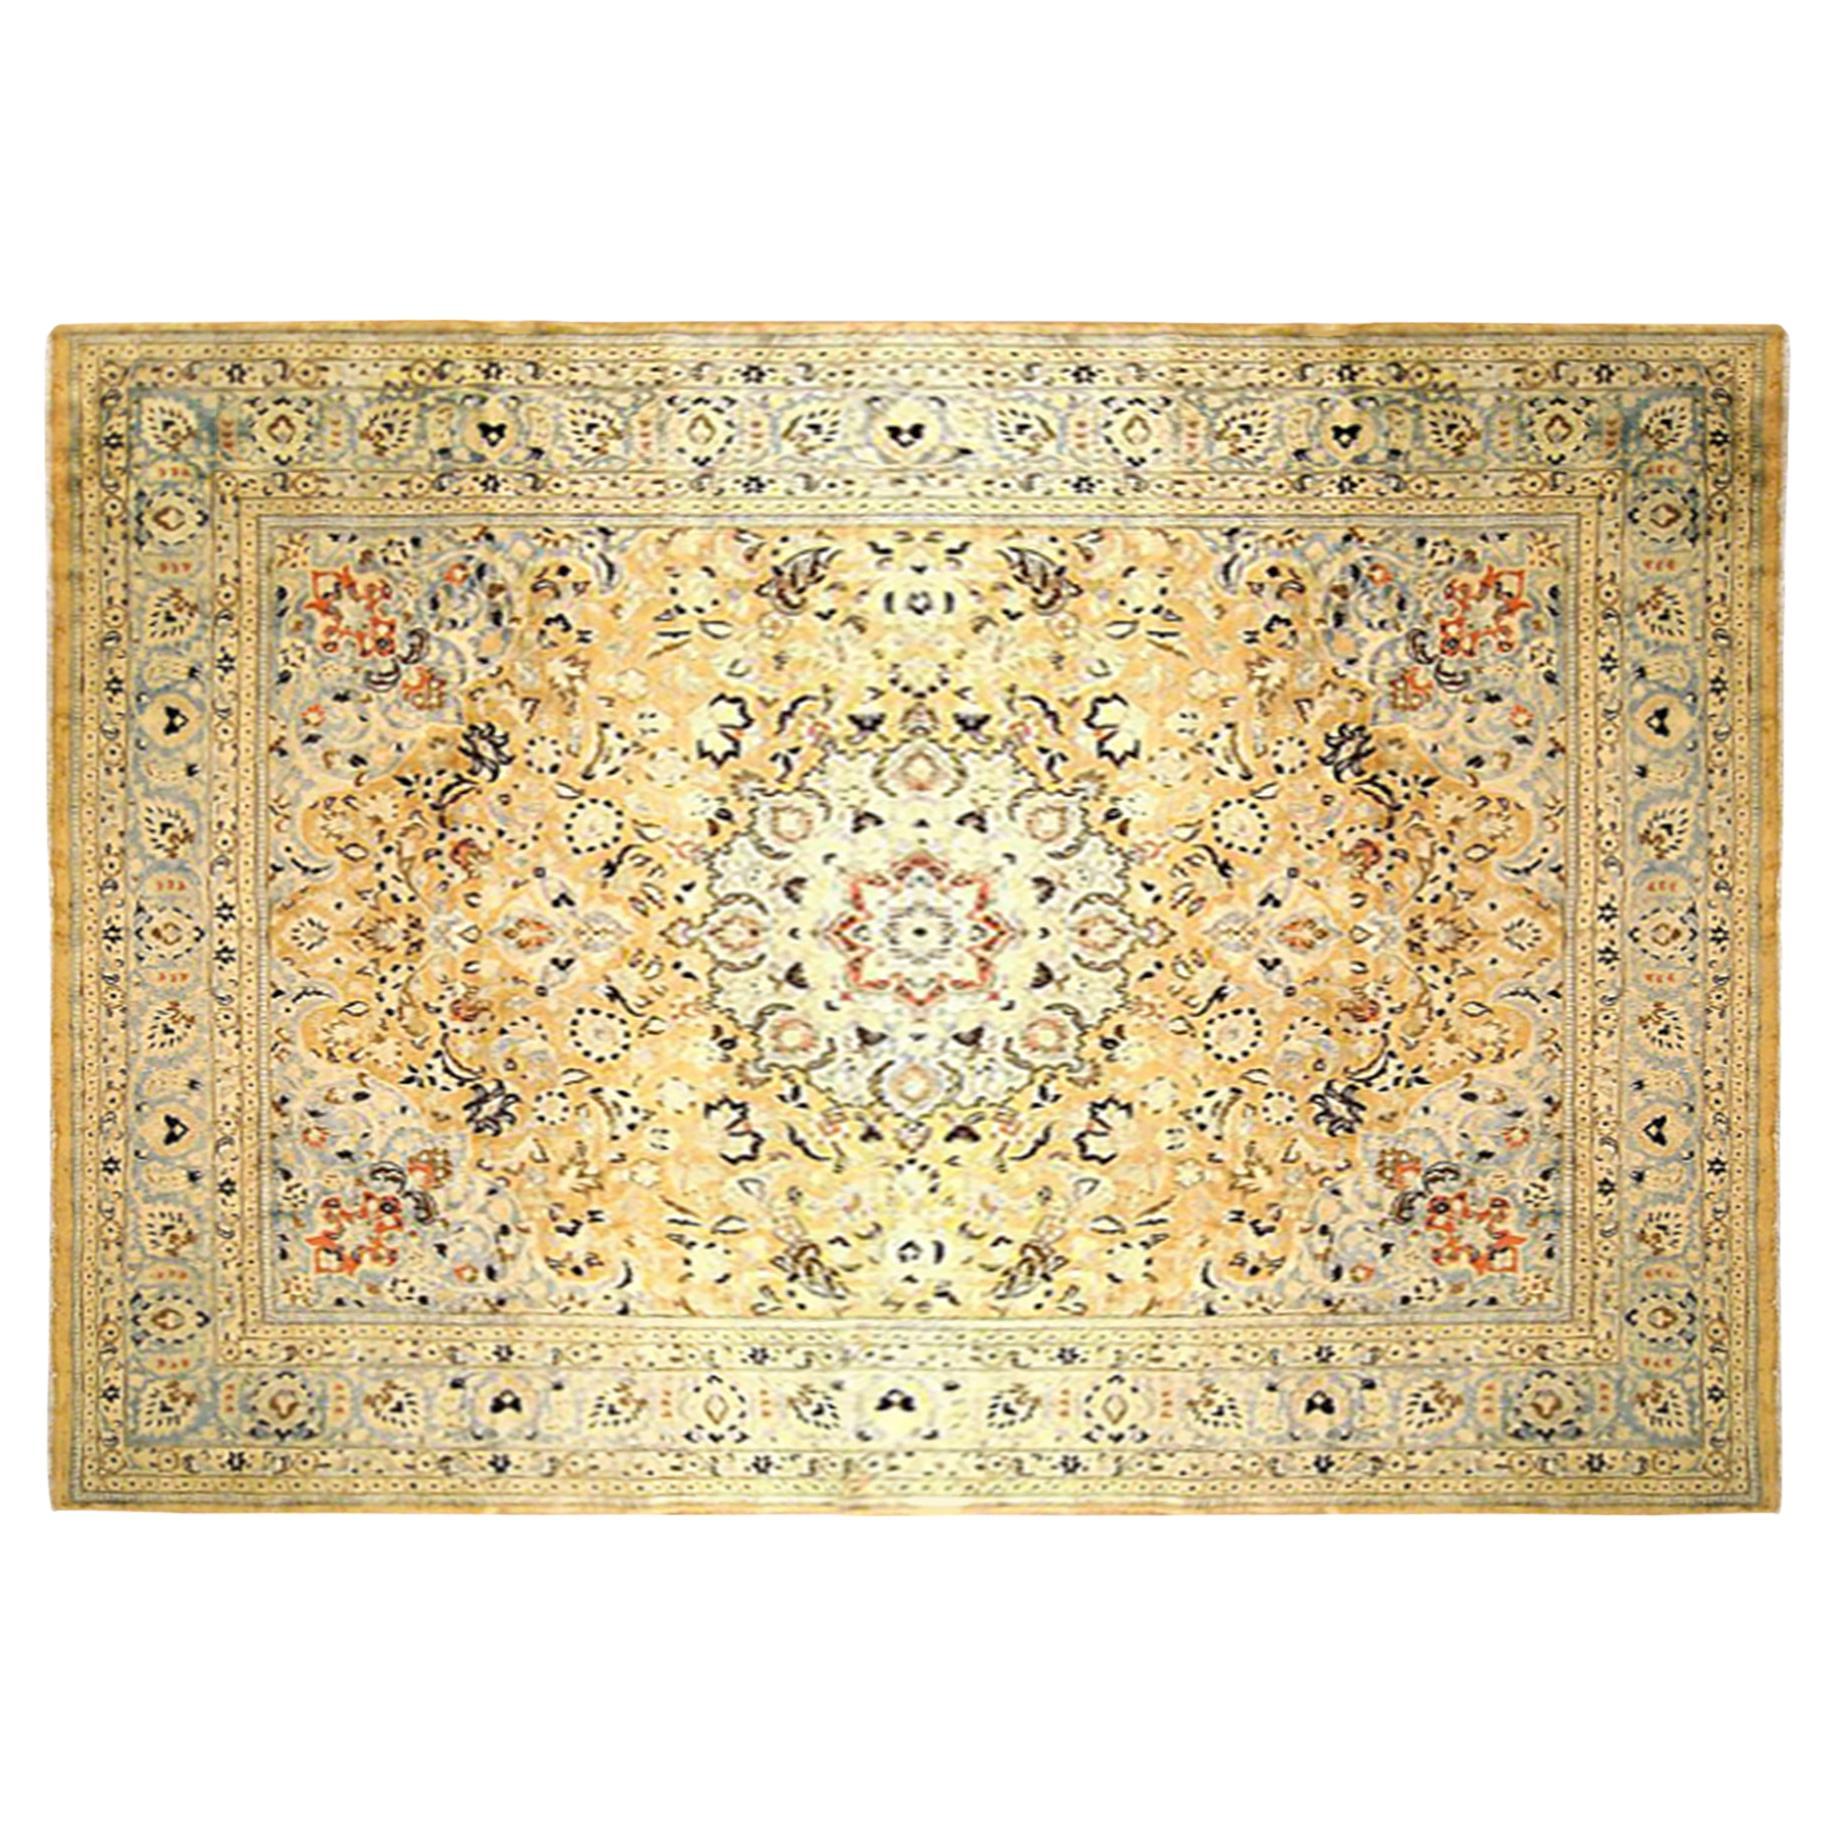 Persischer Meshed Orientalischer Teppich, in Zimmergröße, mit Blumenelementen